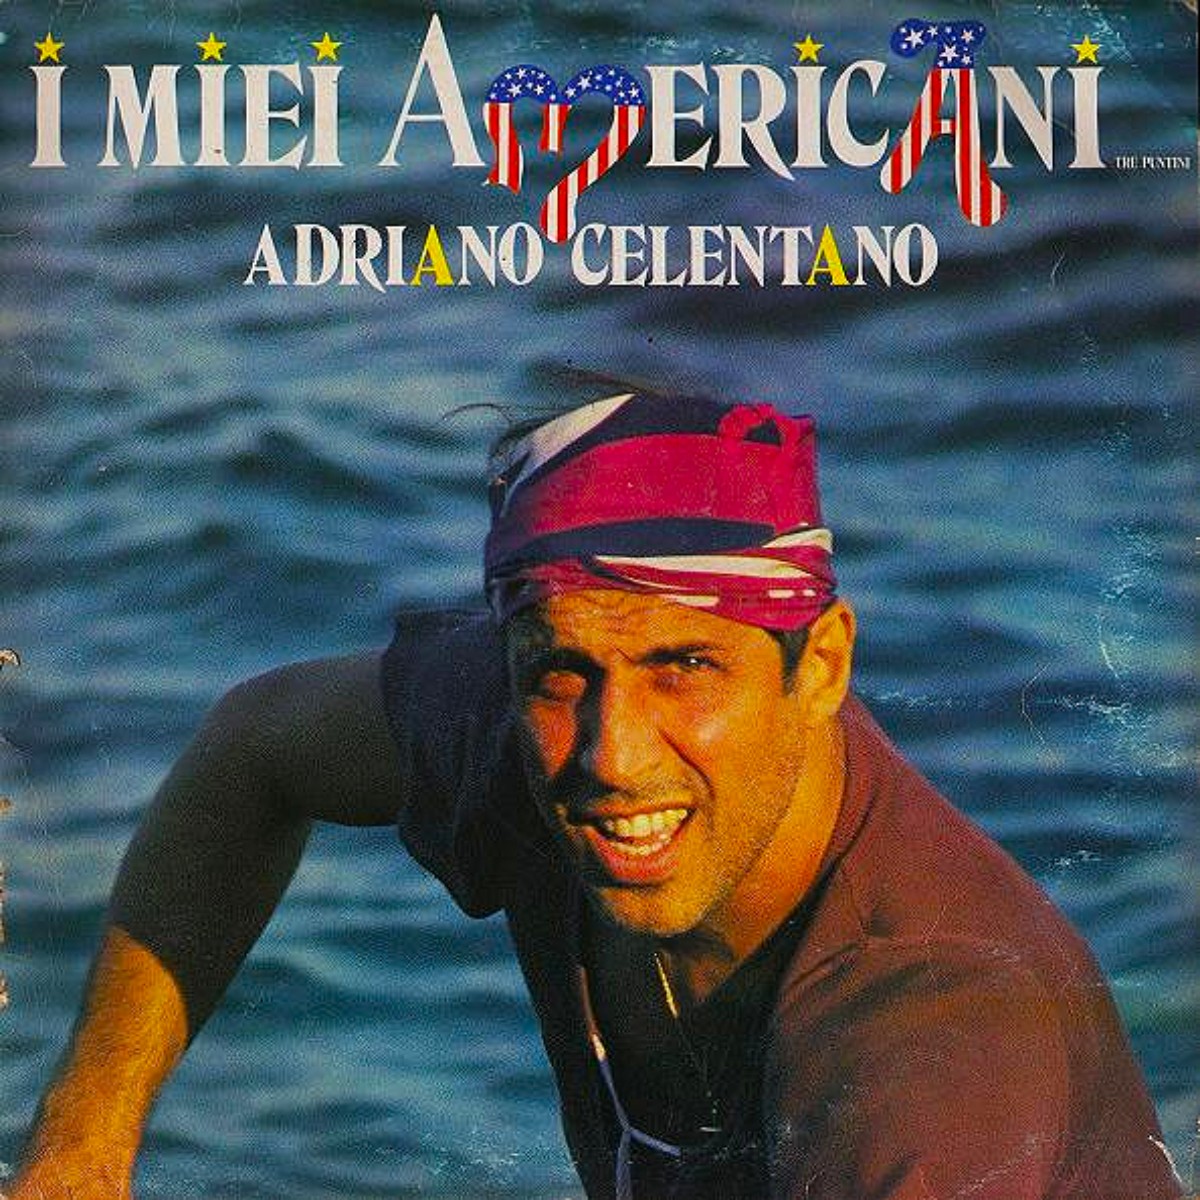 Adriano Celentano, I miei americani